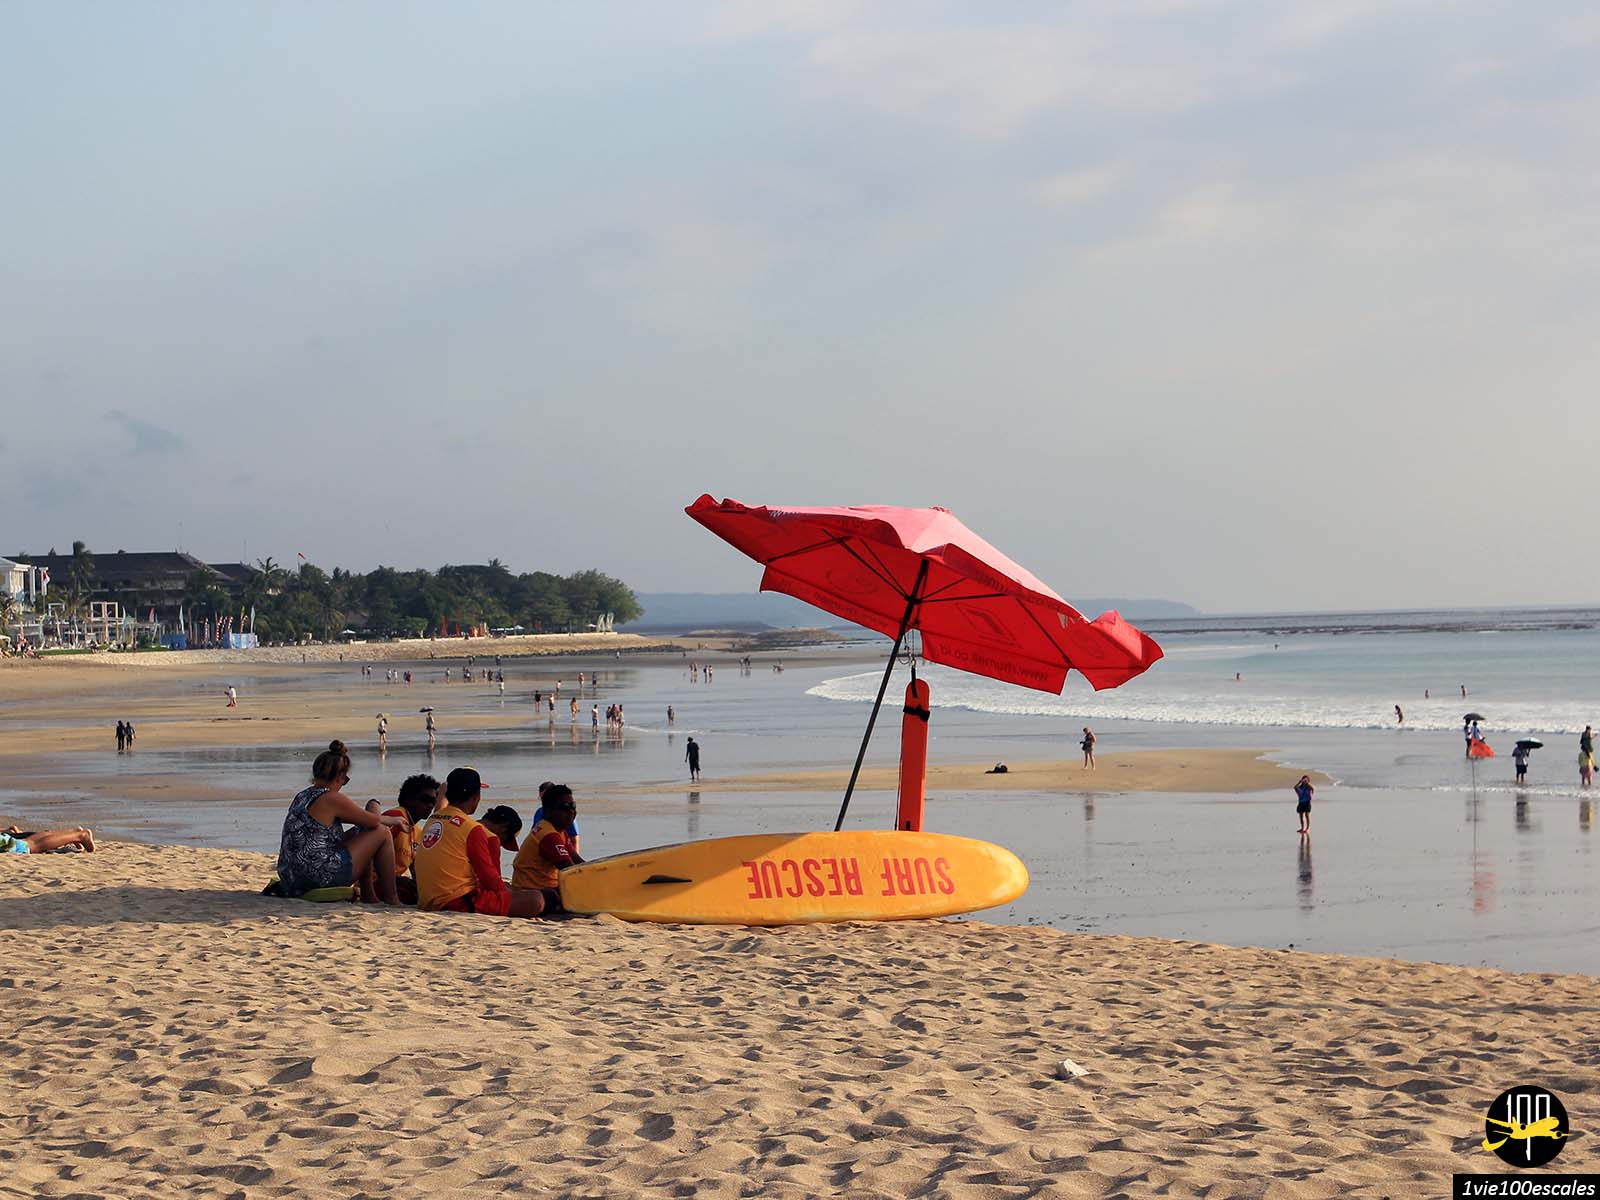 La plage de Kuta correspond à la bande de sable qui relie Kuta et les villages de Legian, Tuban et Seminyak sur la côte ouest de Bali